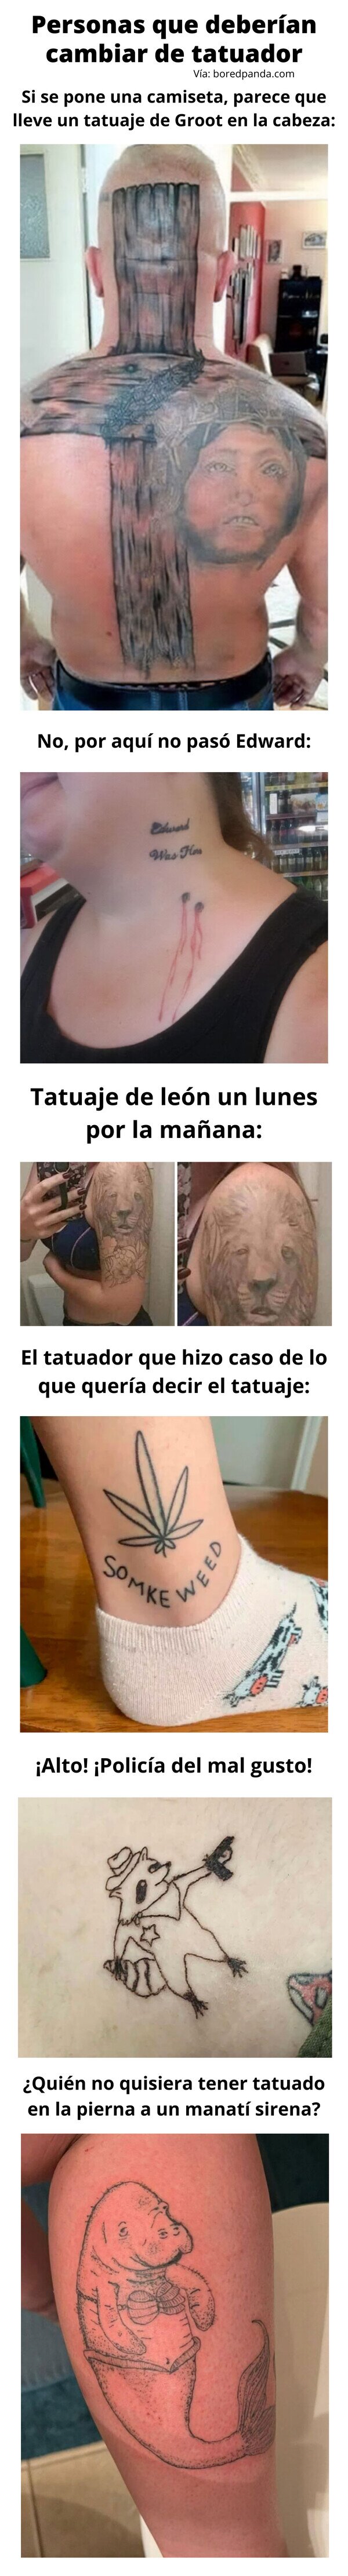 Meme_otros - Personas que deberían cambiar de tatuador